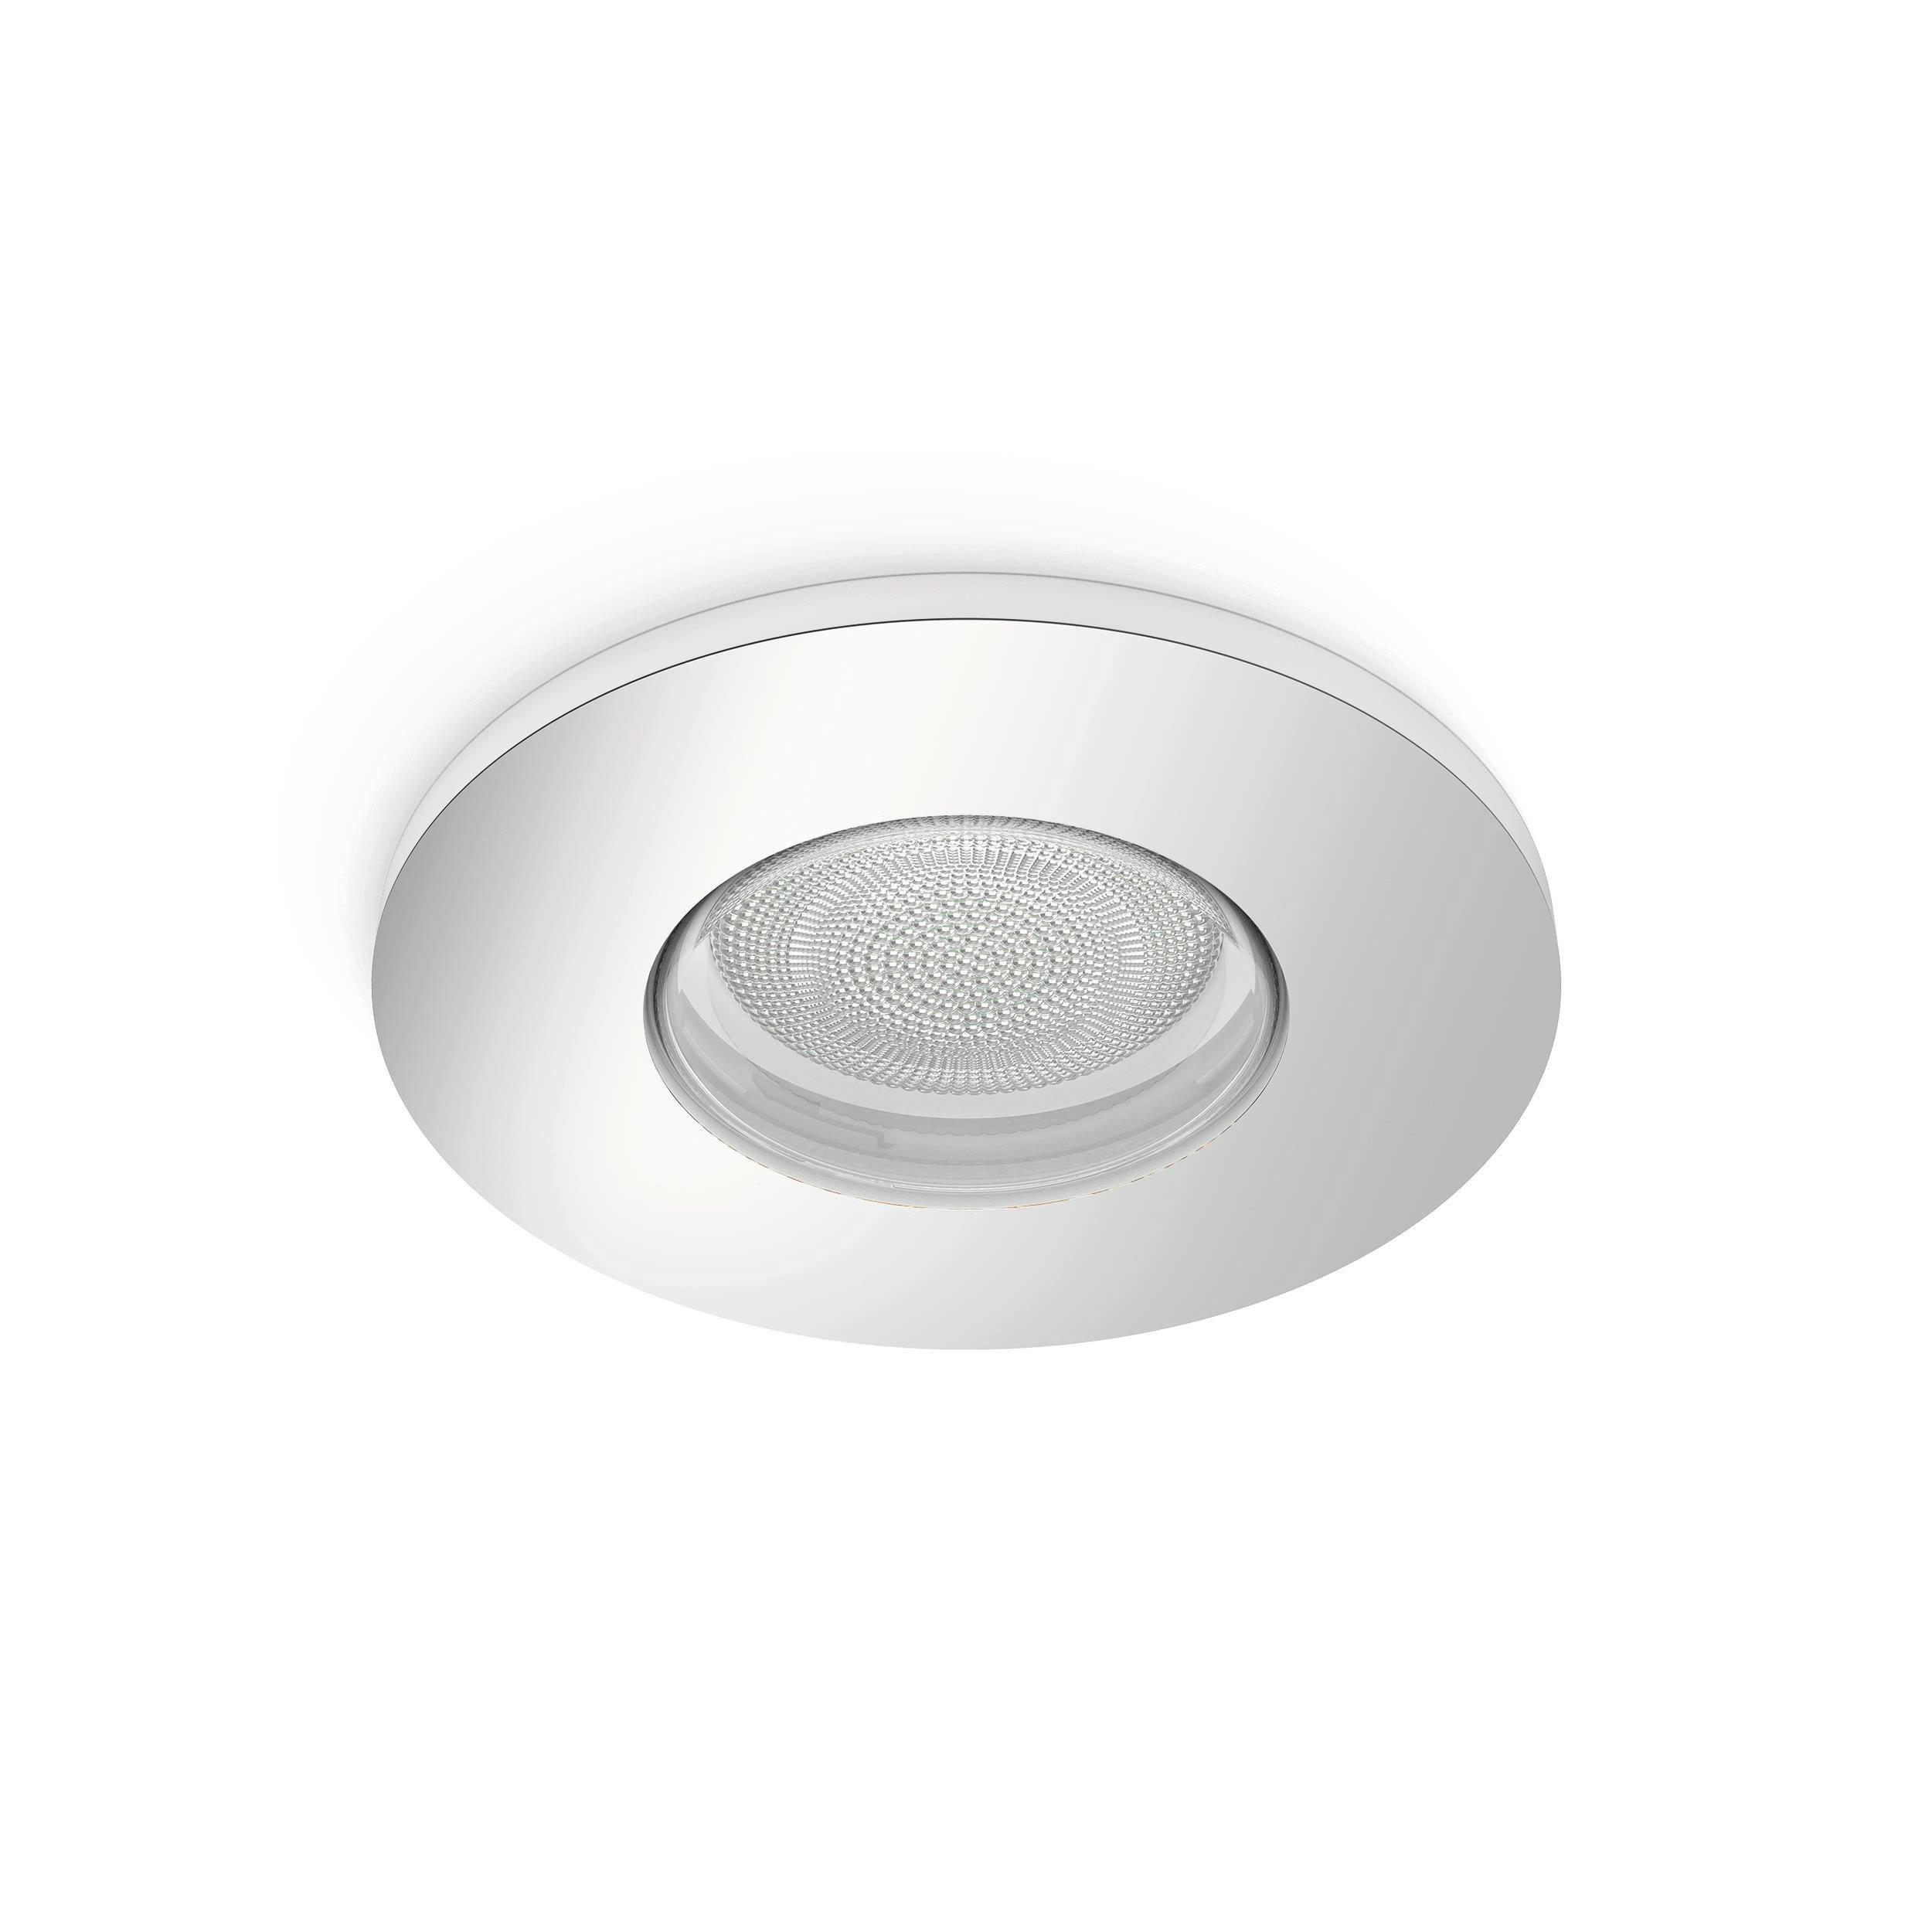 LED-STRAHLER White & Color Ambiance Xamento 9,4/9,4 cm   - Chromfarben, Basics, Metall (9,4/9,4cm) - Philips HUE